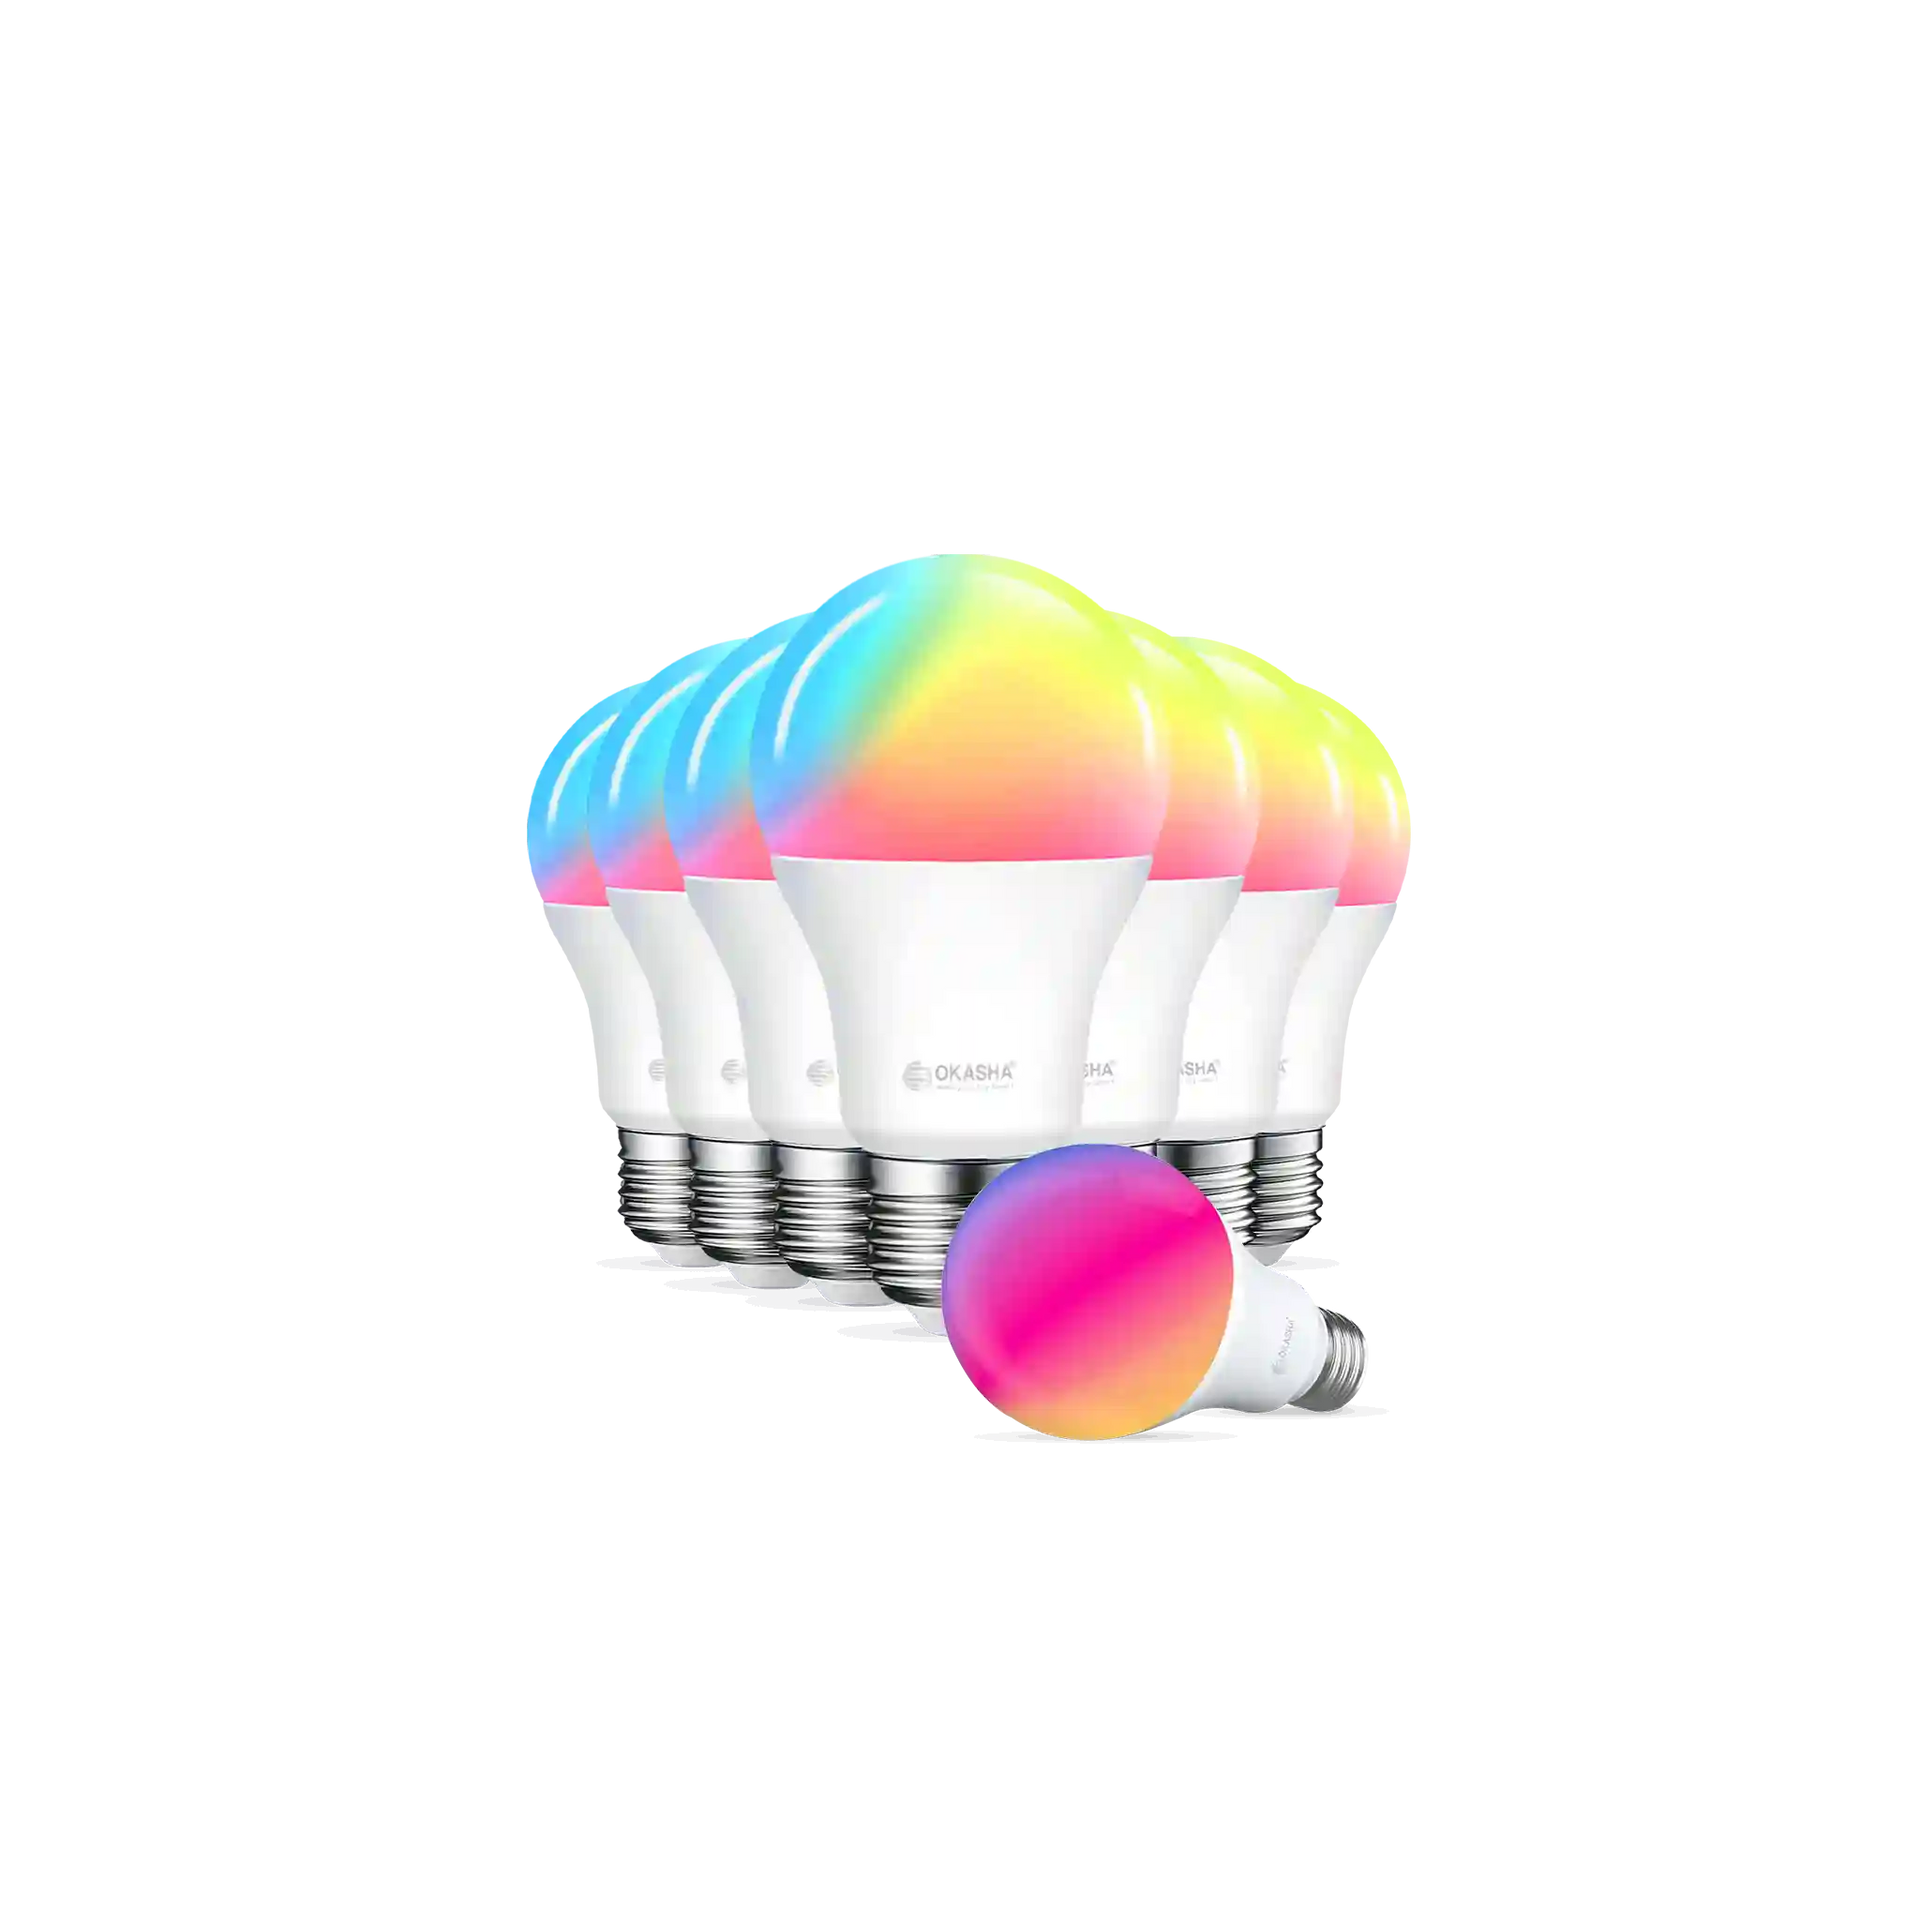 Okasha Smart LED Bulb Multi Color 12Watt